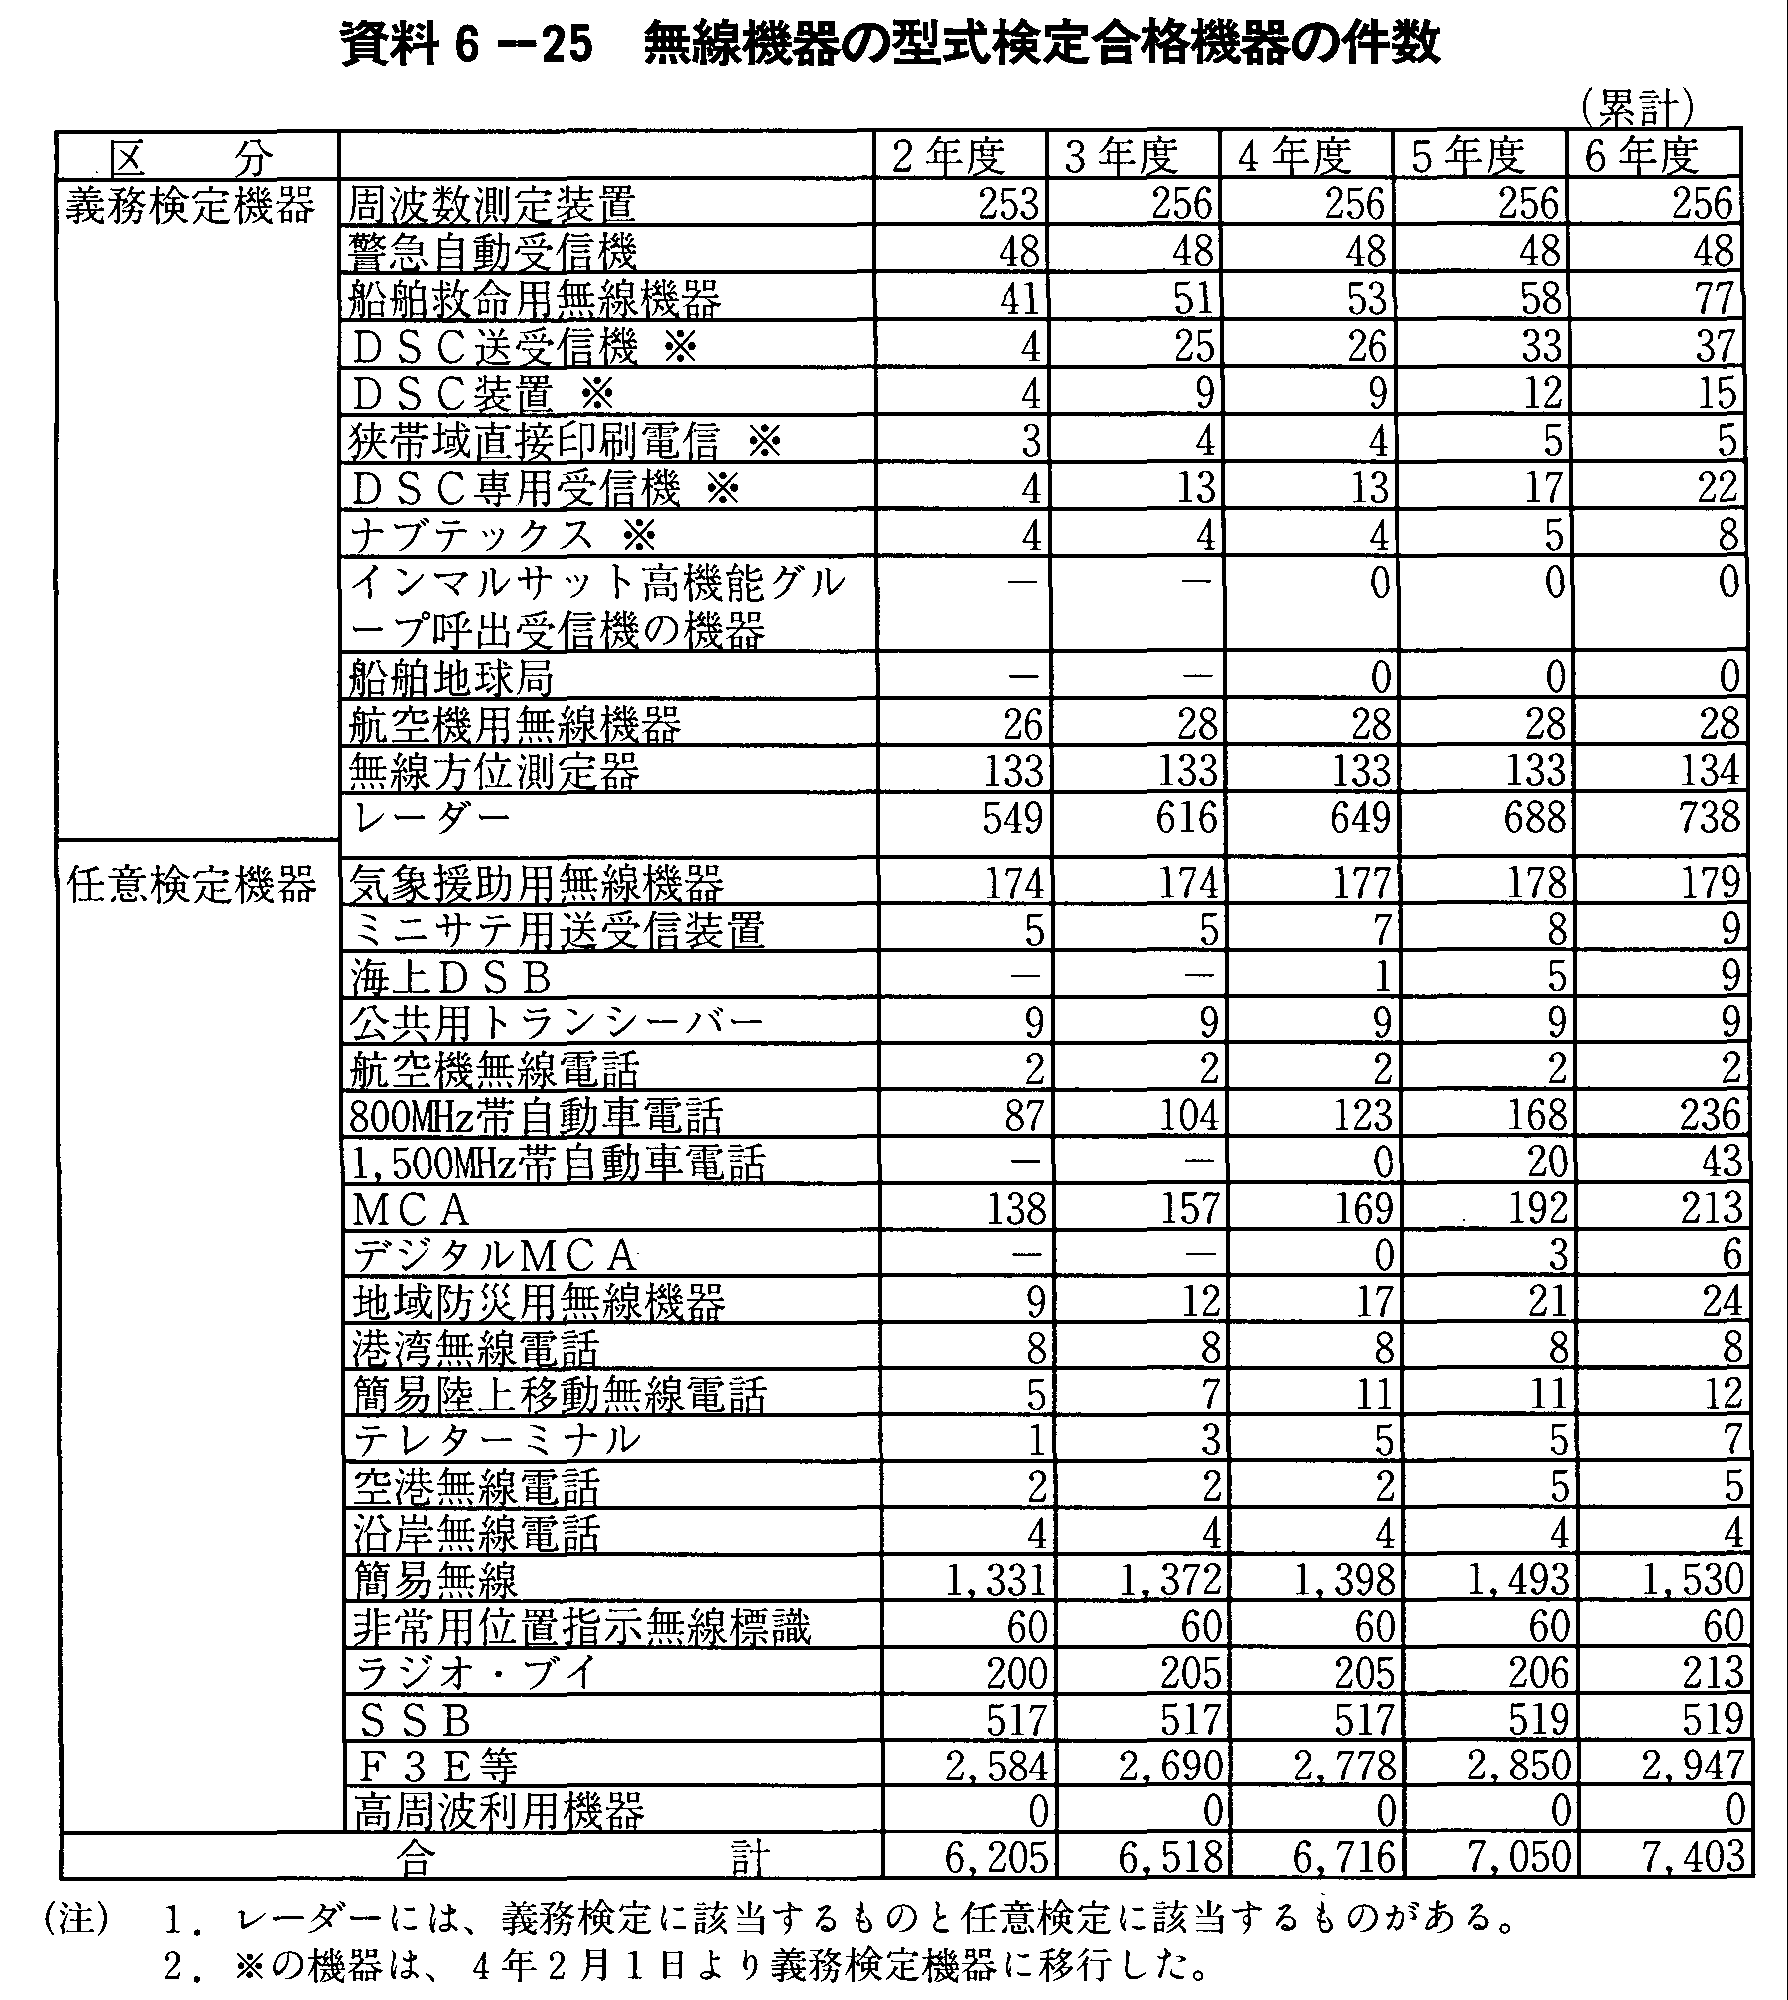 資料6-25 無線機器の型式検定合格機器の件数(累計)